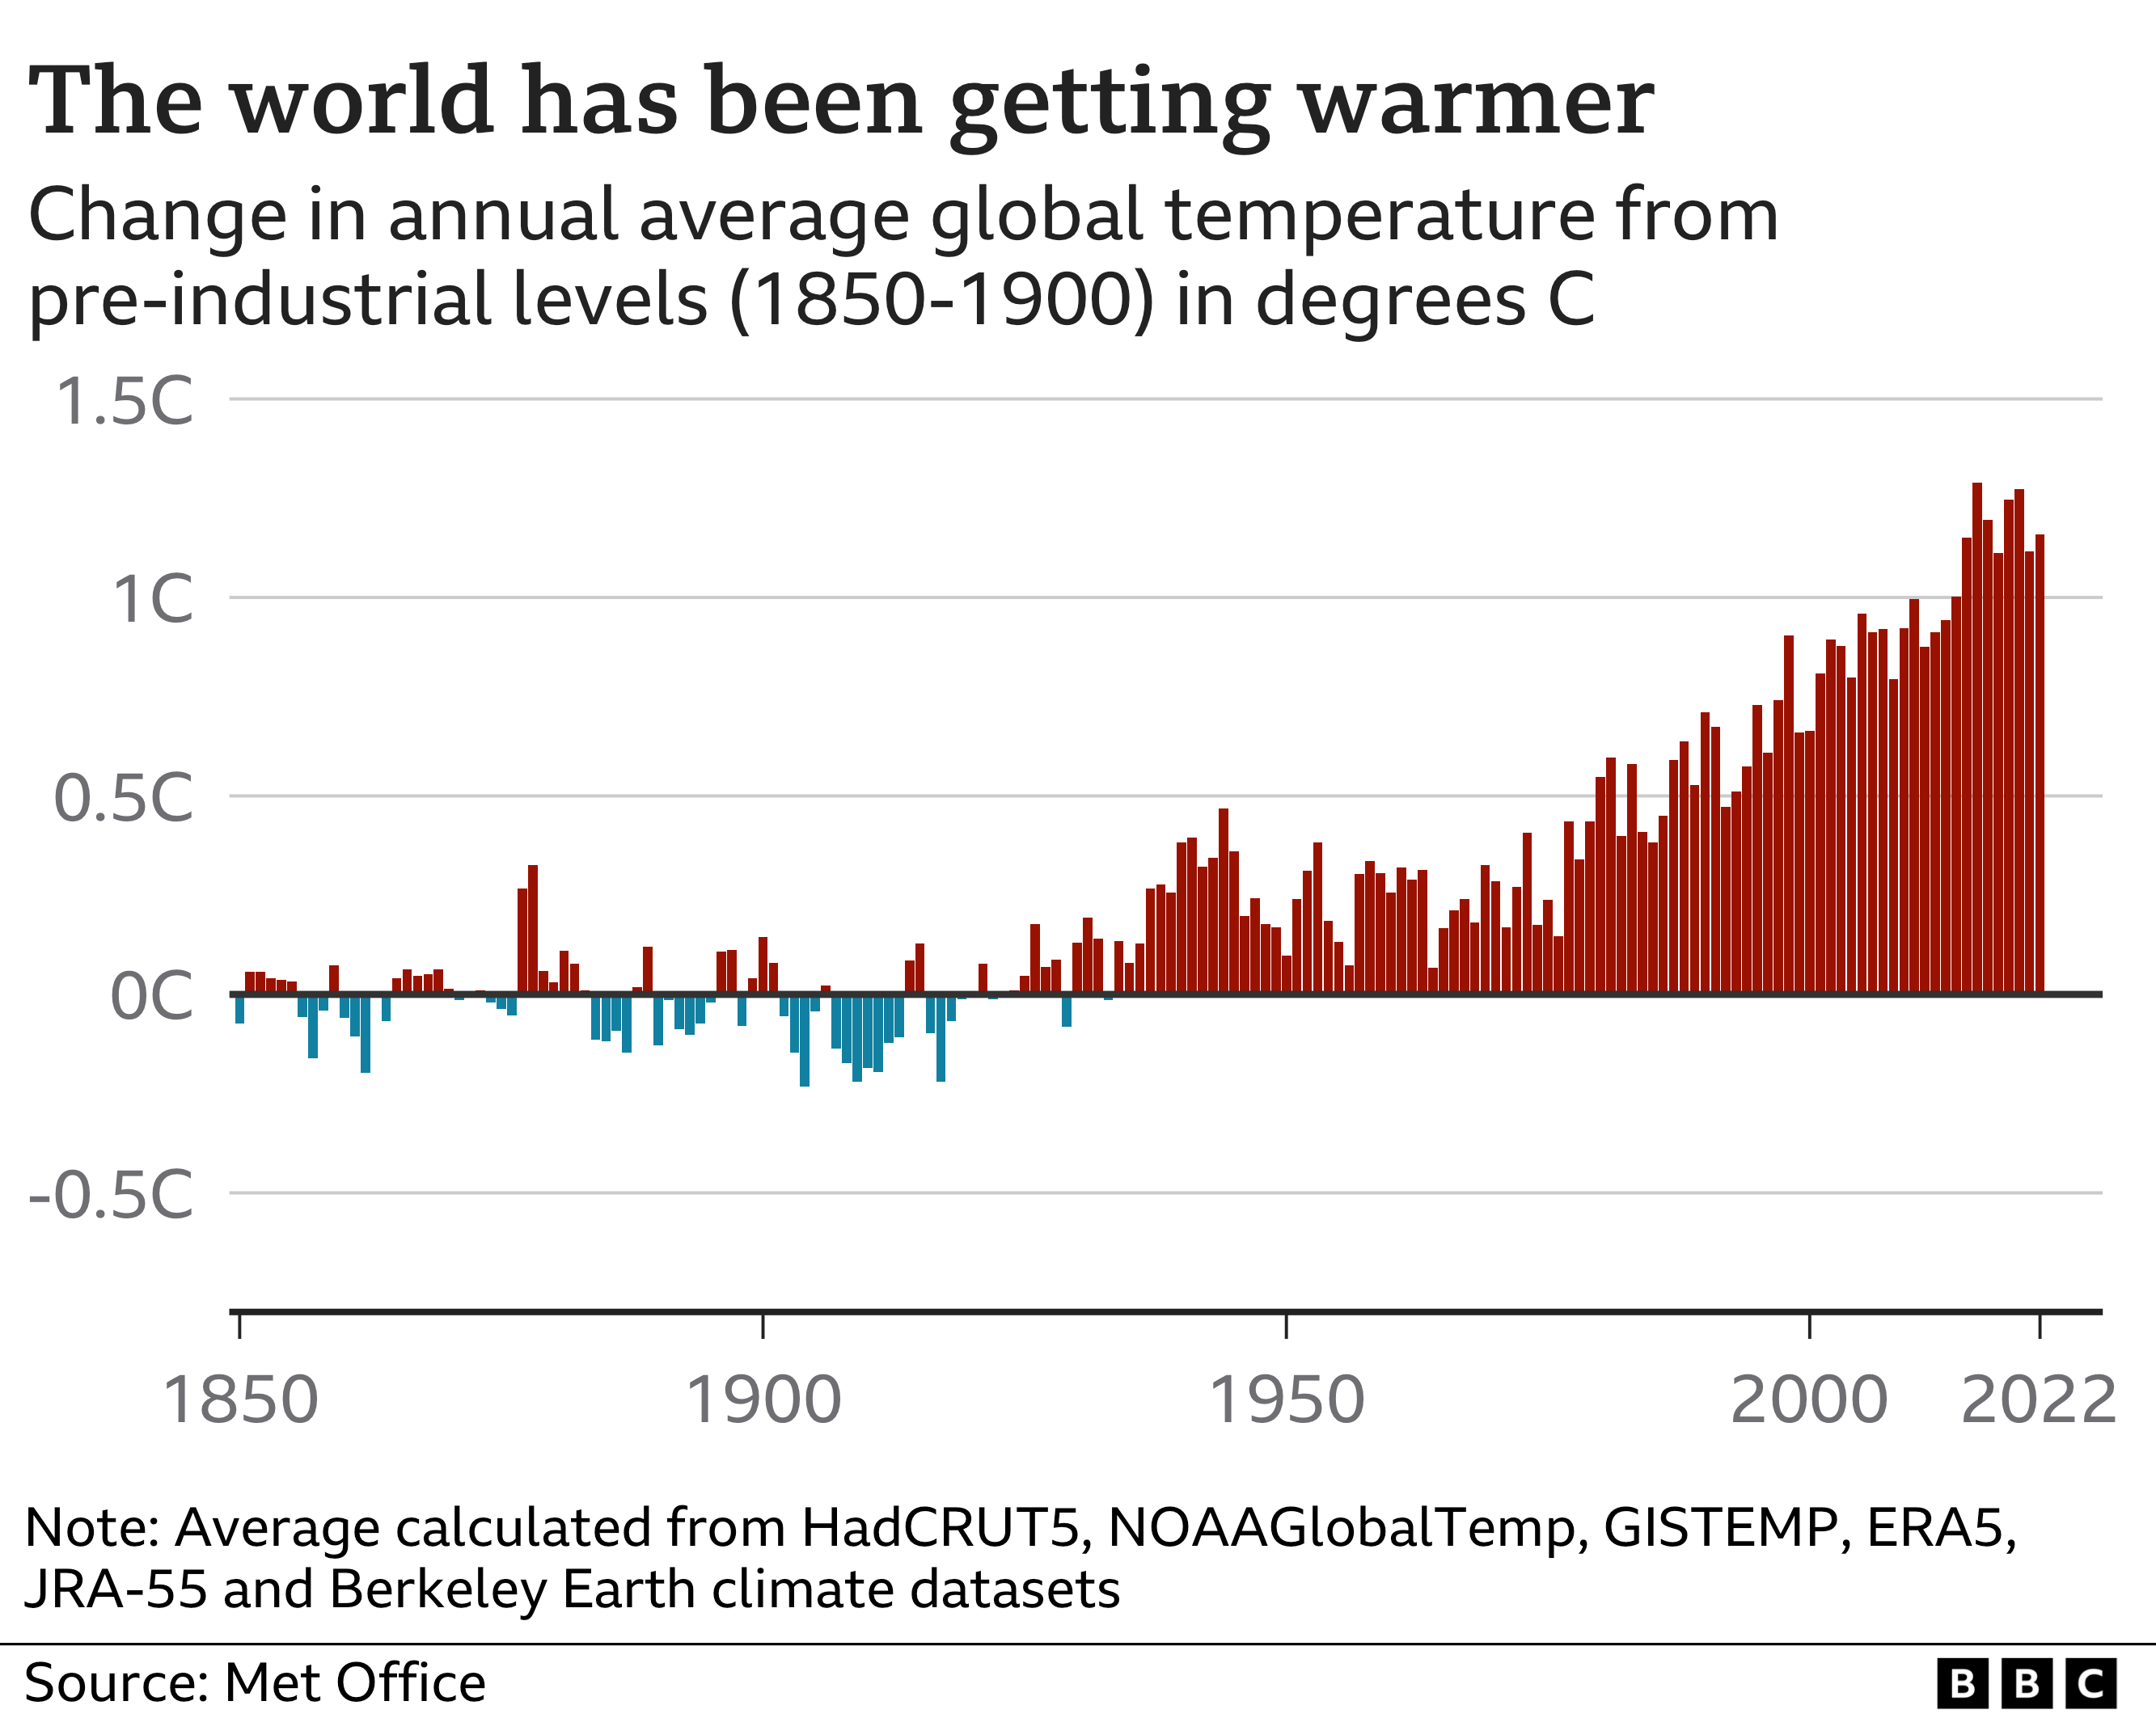 Изменение глобальной температуры по сравнению со средним доиндустриальным уровнем. Температура была около средней примерно до 1950 года, но с тех пор она повысилась, регулярно превышая 1C потепления в последнее десятилетие.